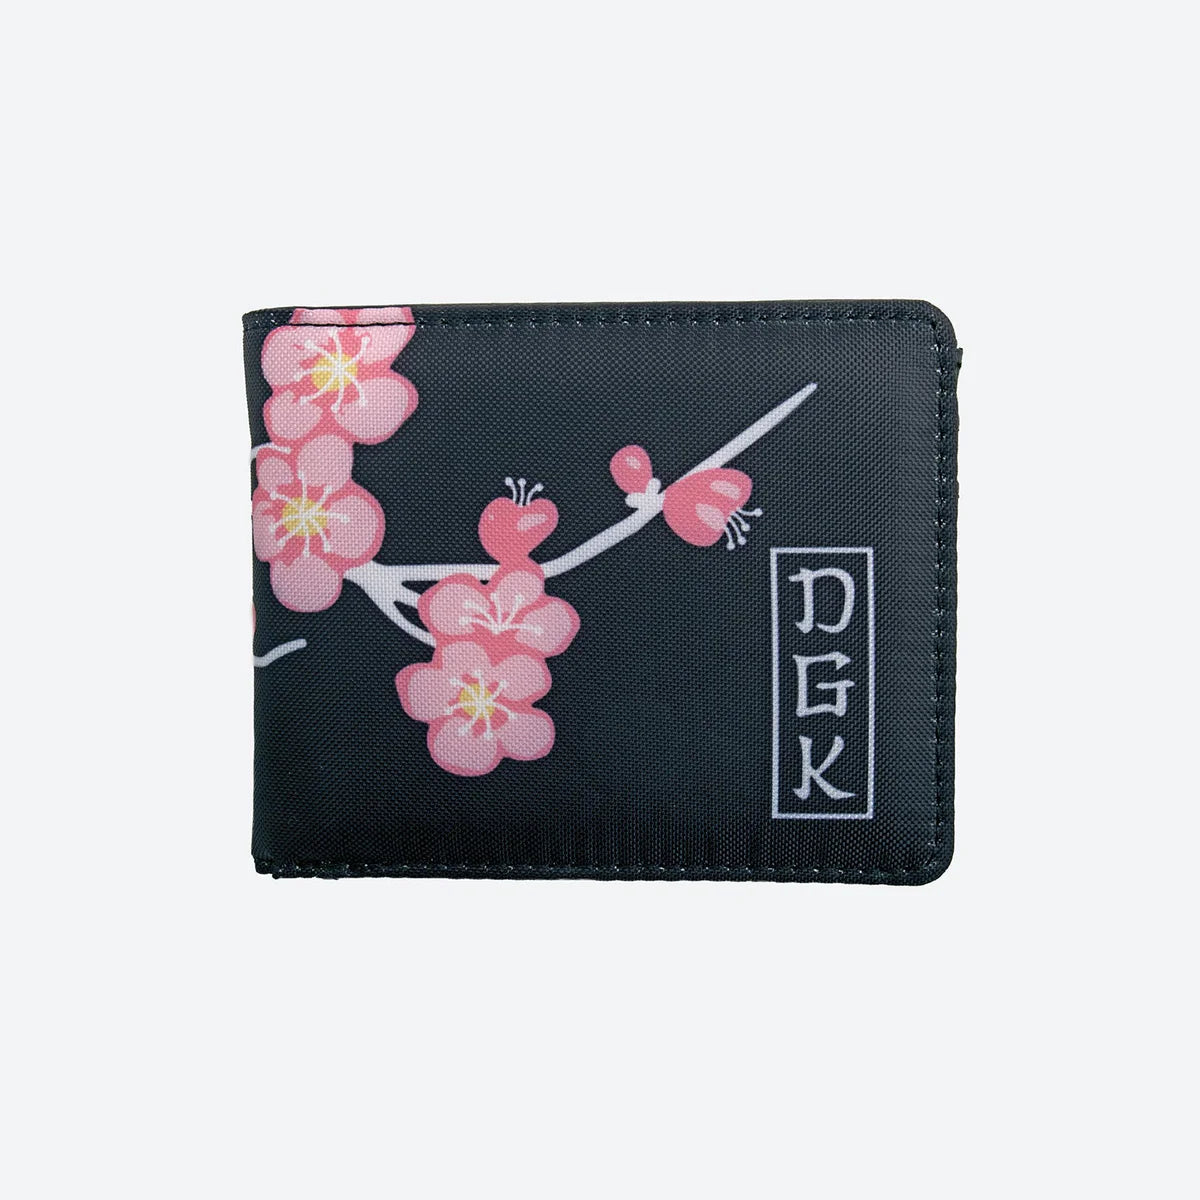 DGK Zen Bi-Fold Wallet - Black